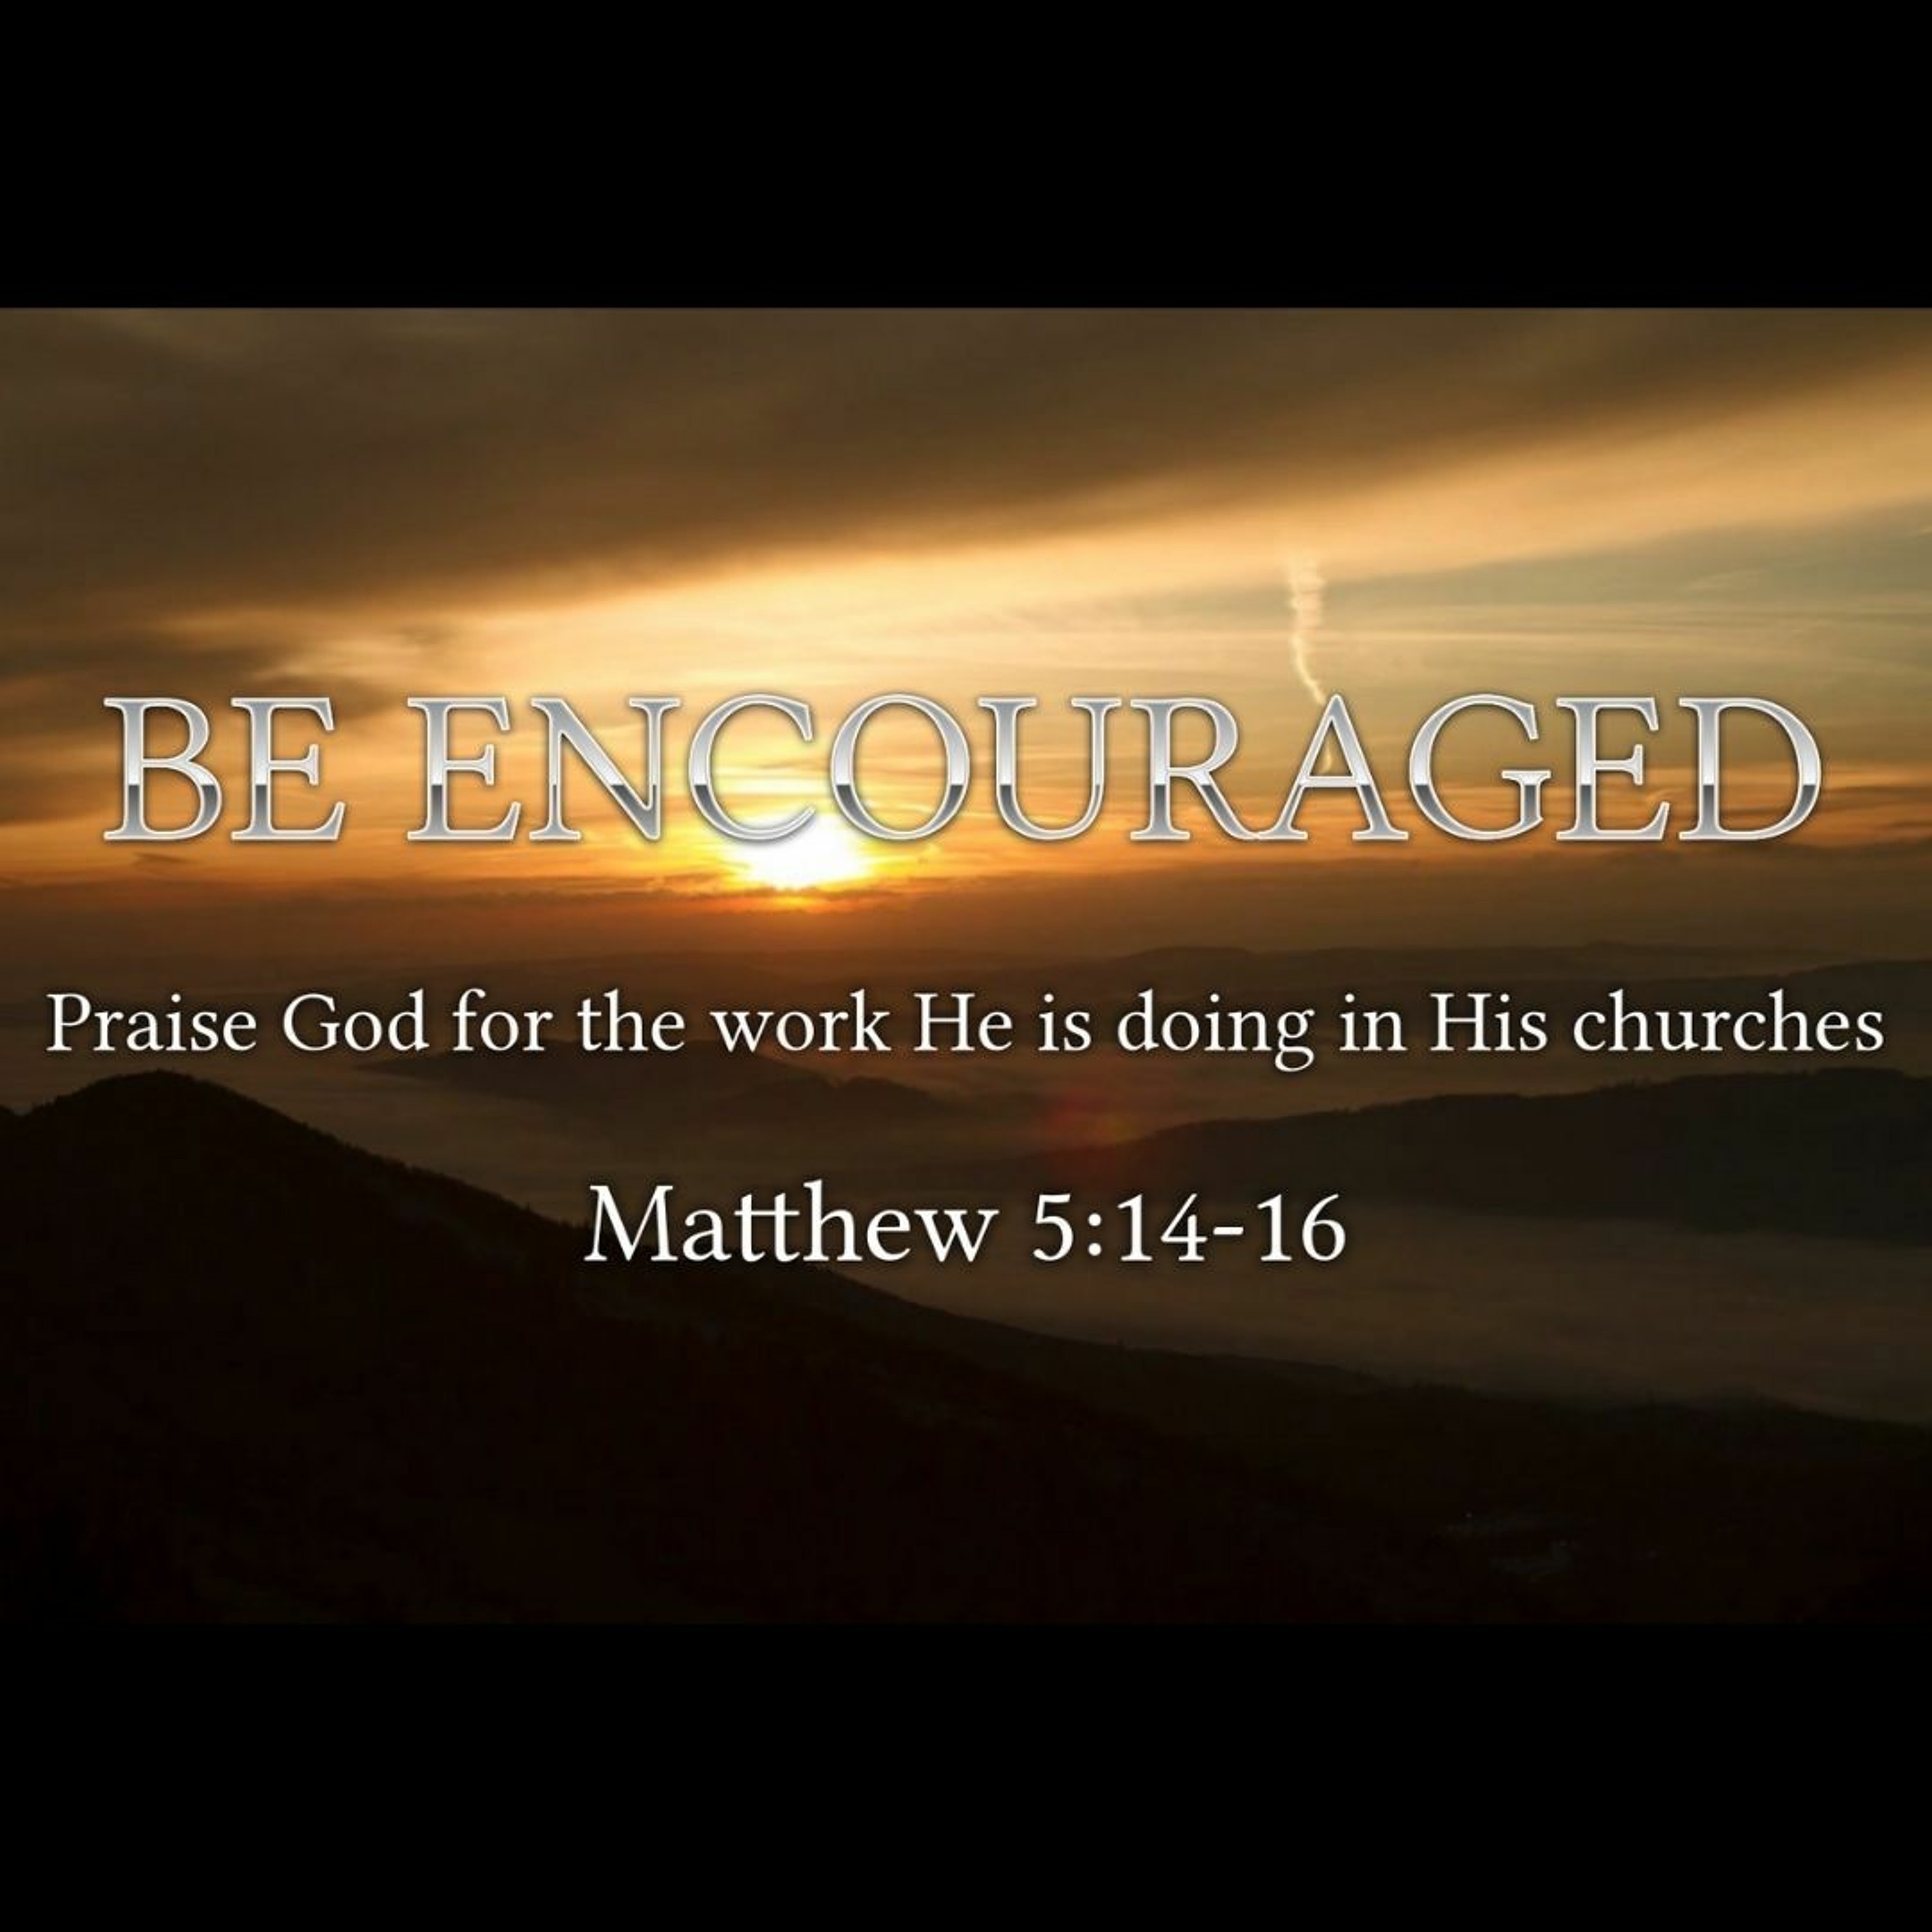 Be Encouraged (Mathew 5:14-16)